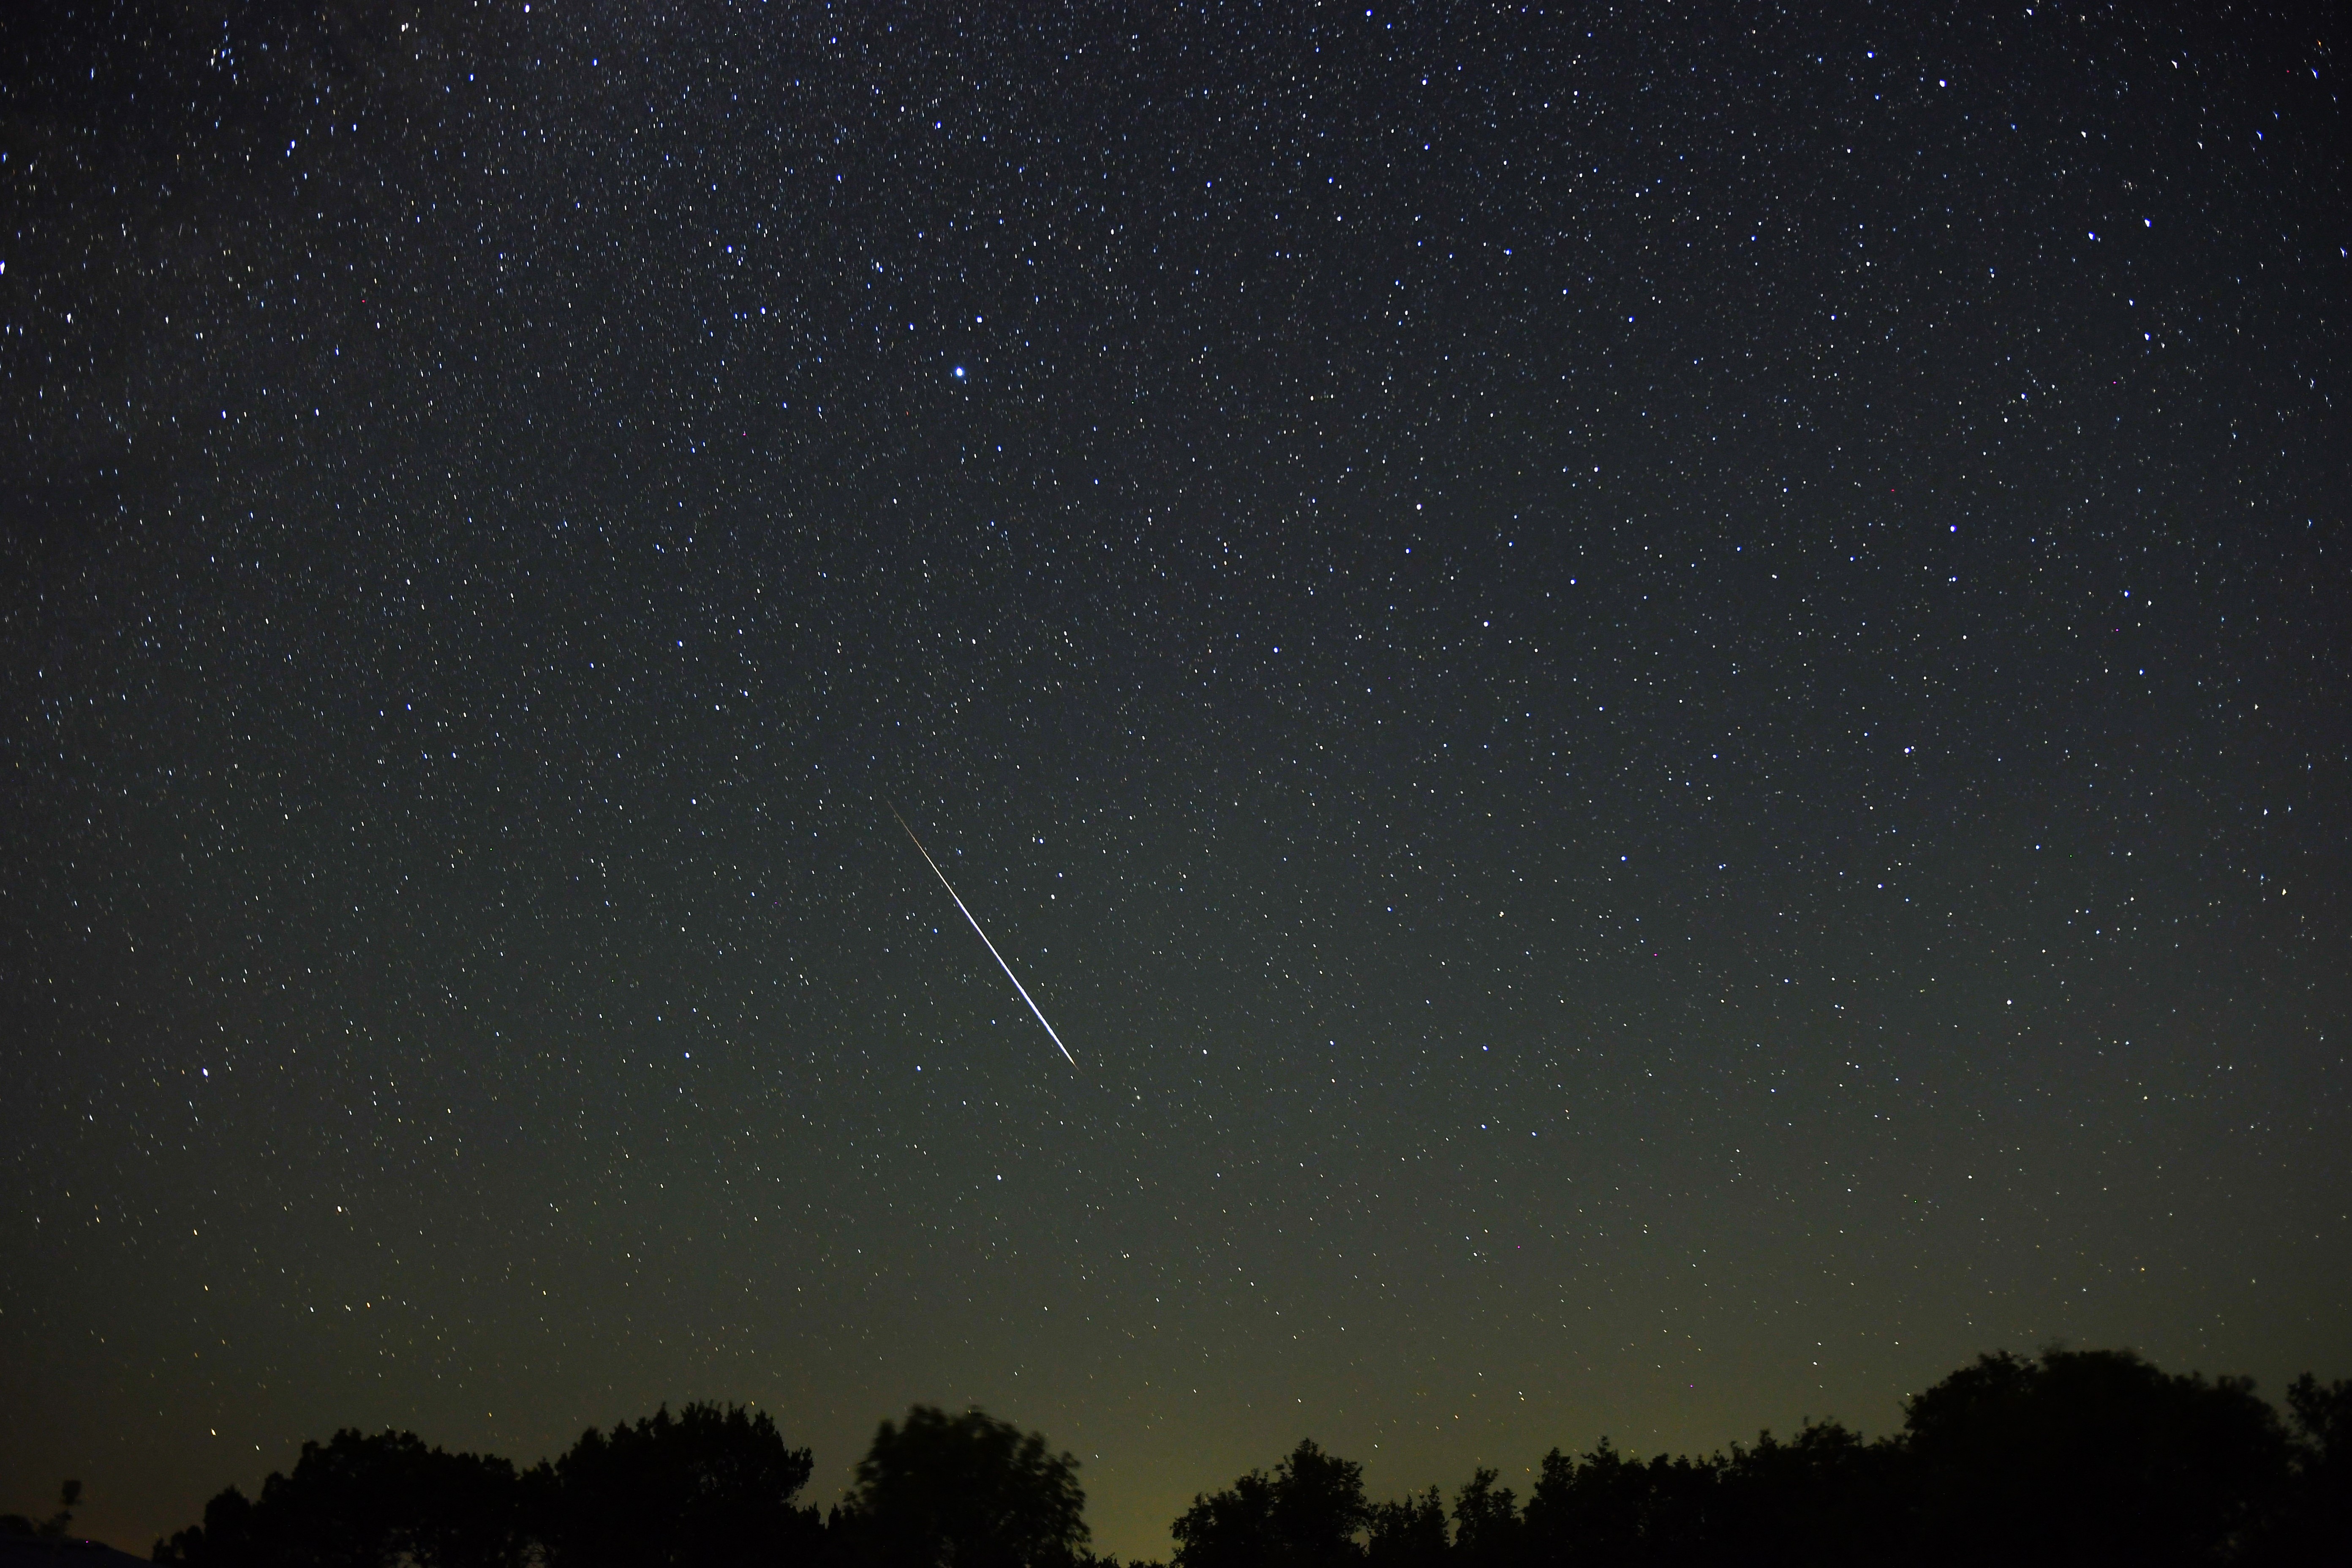 A meteorrajt csillagos égbolt és festői előtér előtt ábrázolják